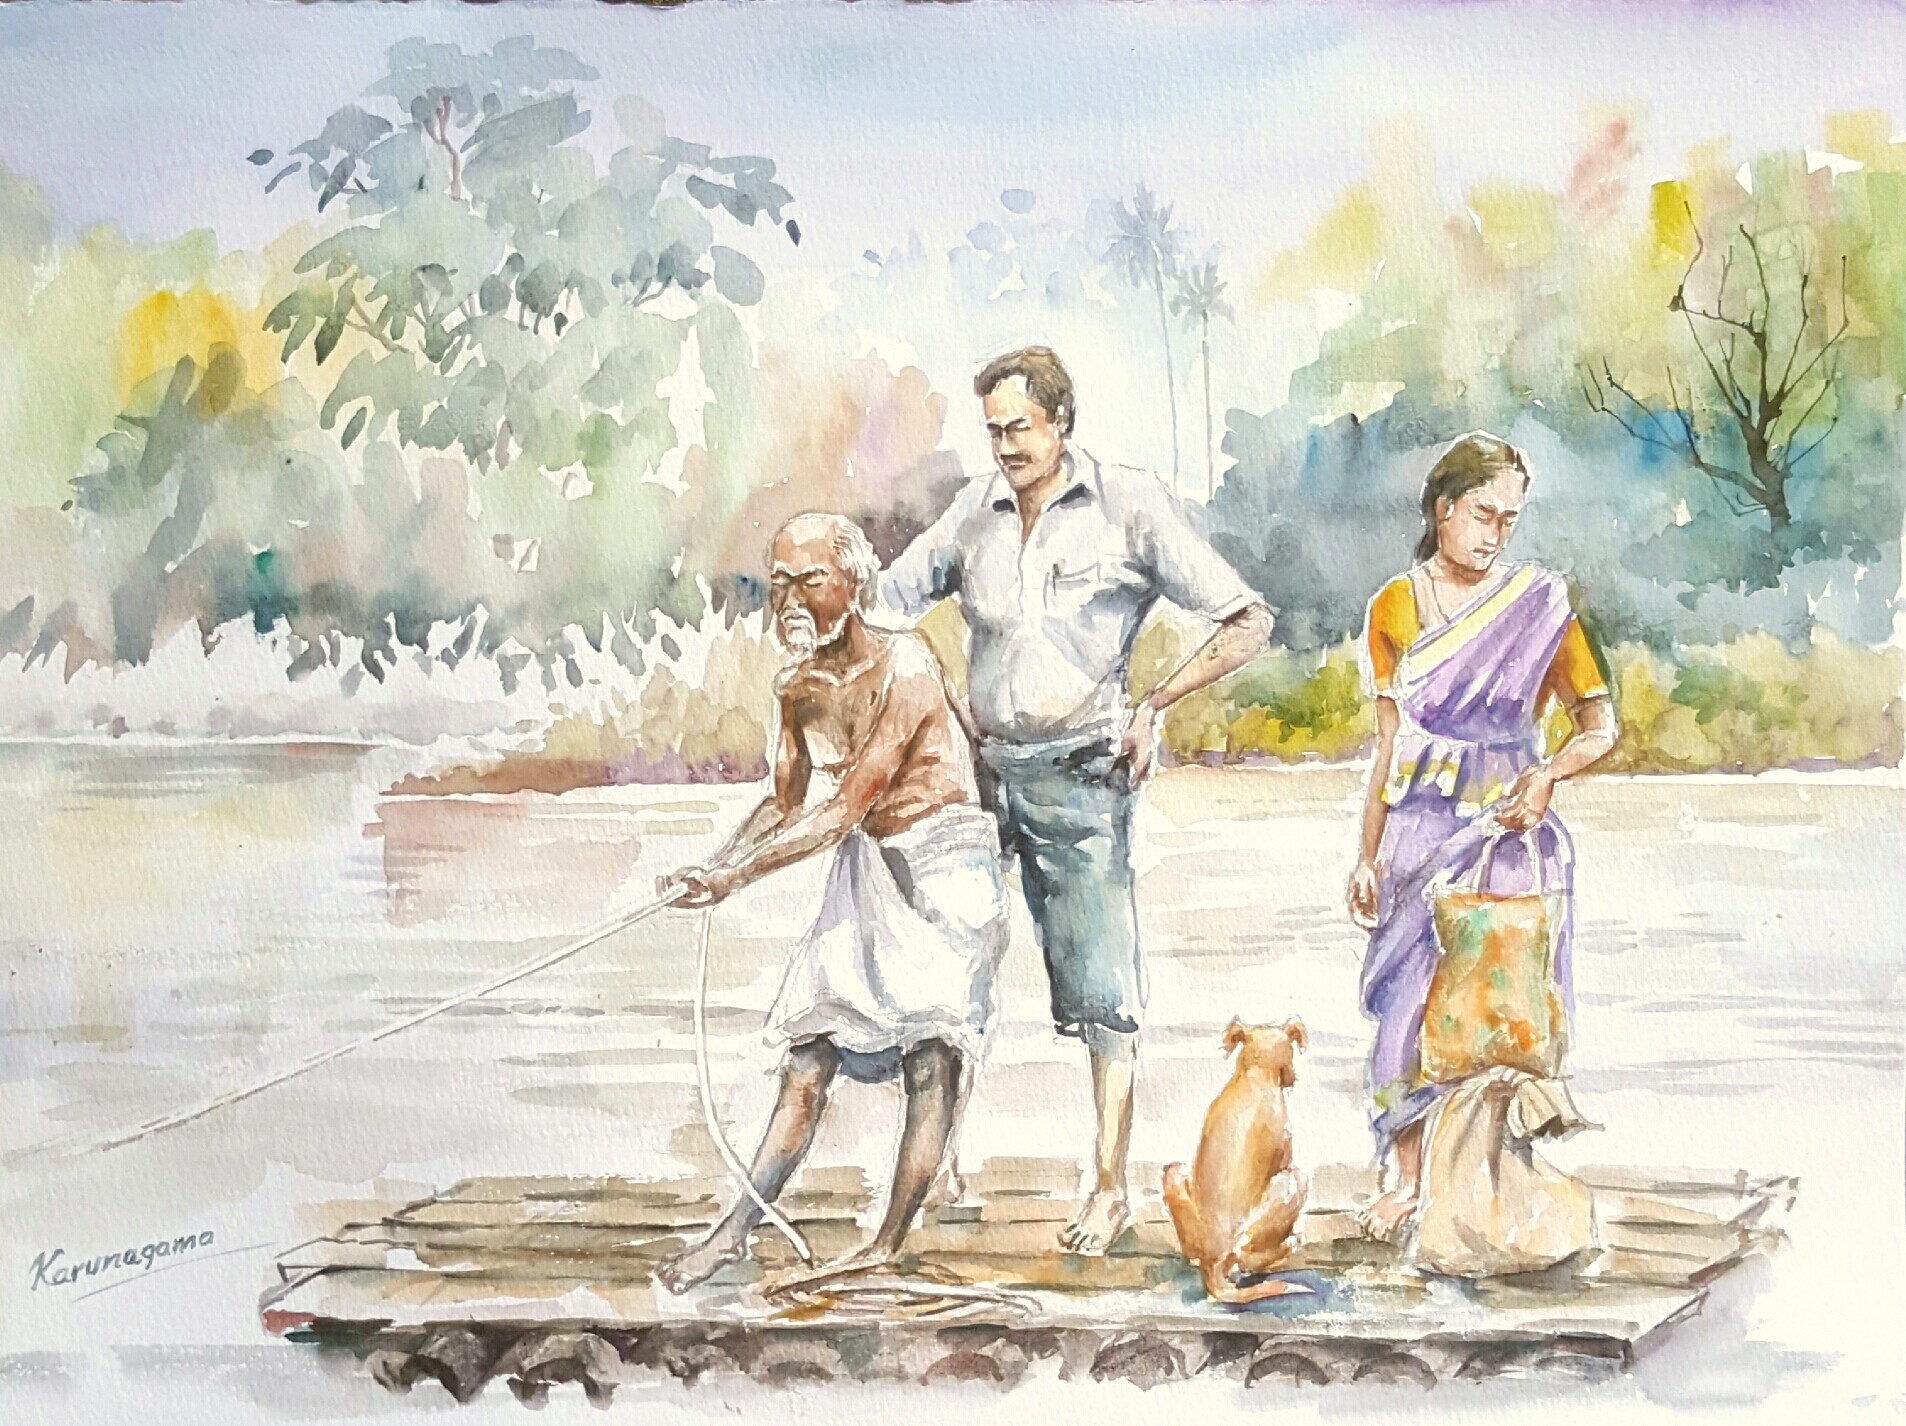 Crossing river by Sarath Karunagama